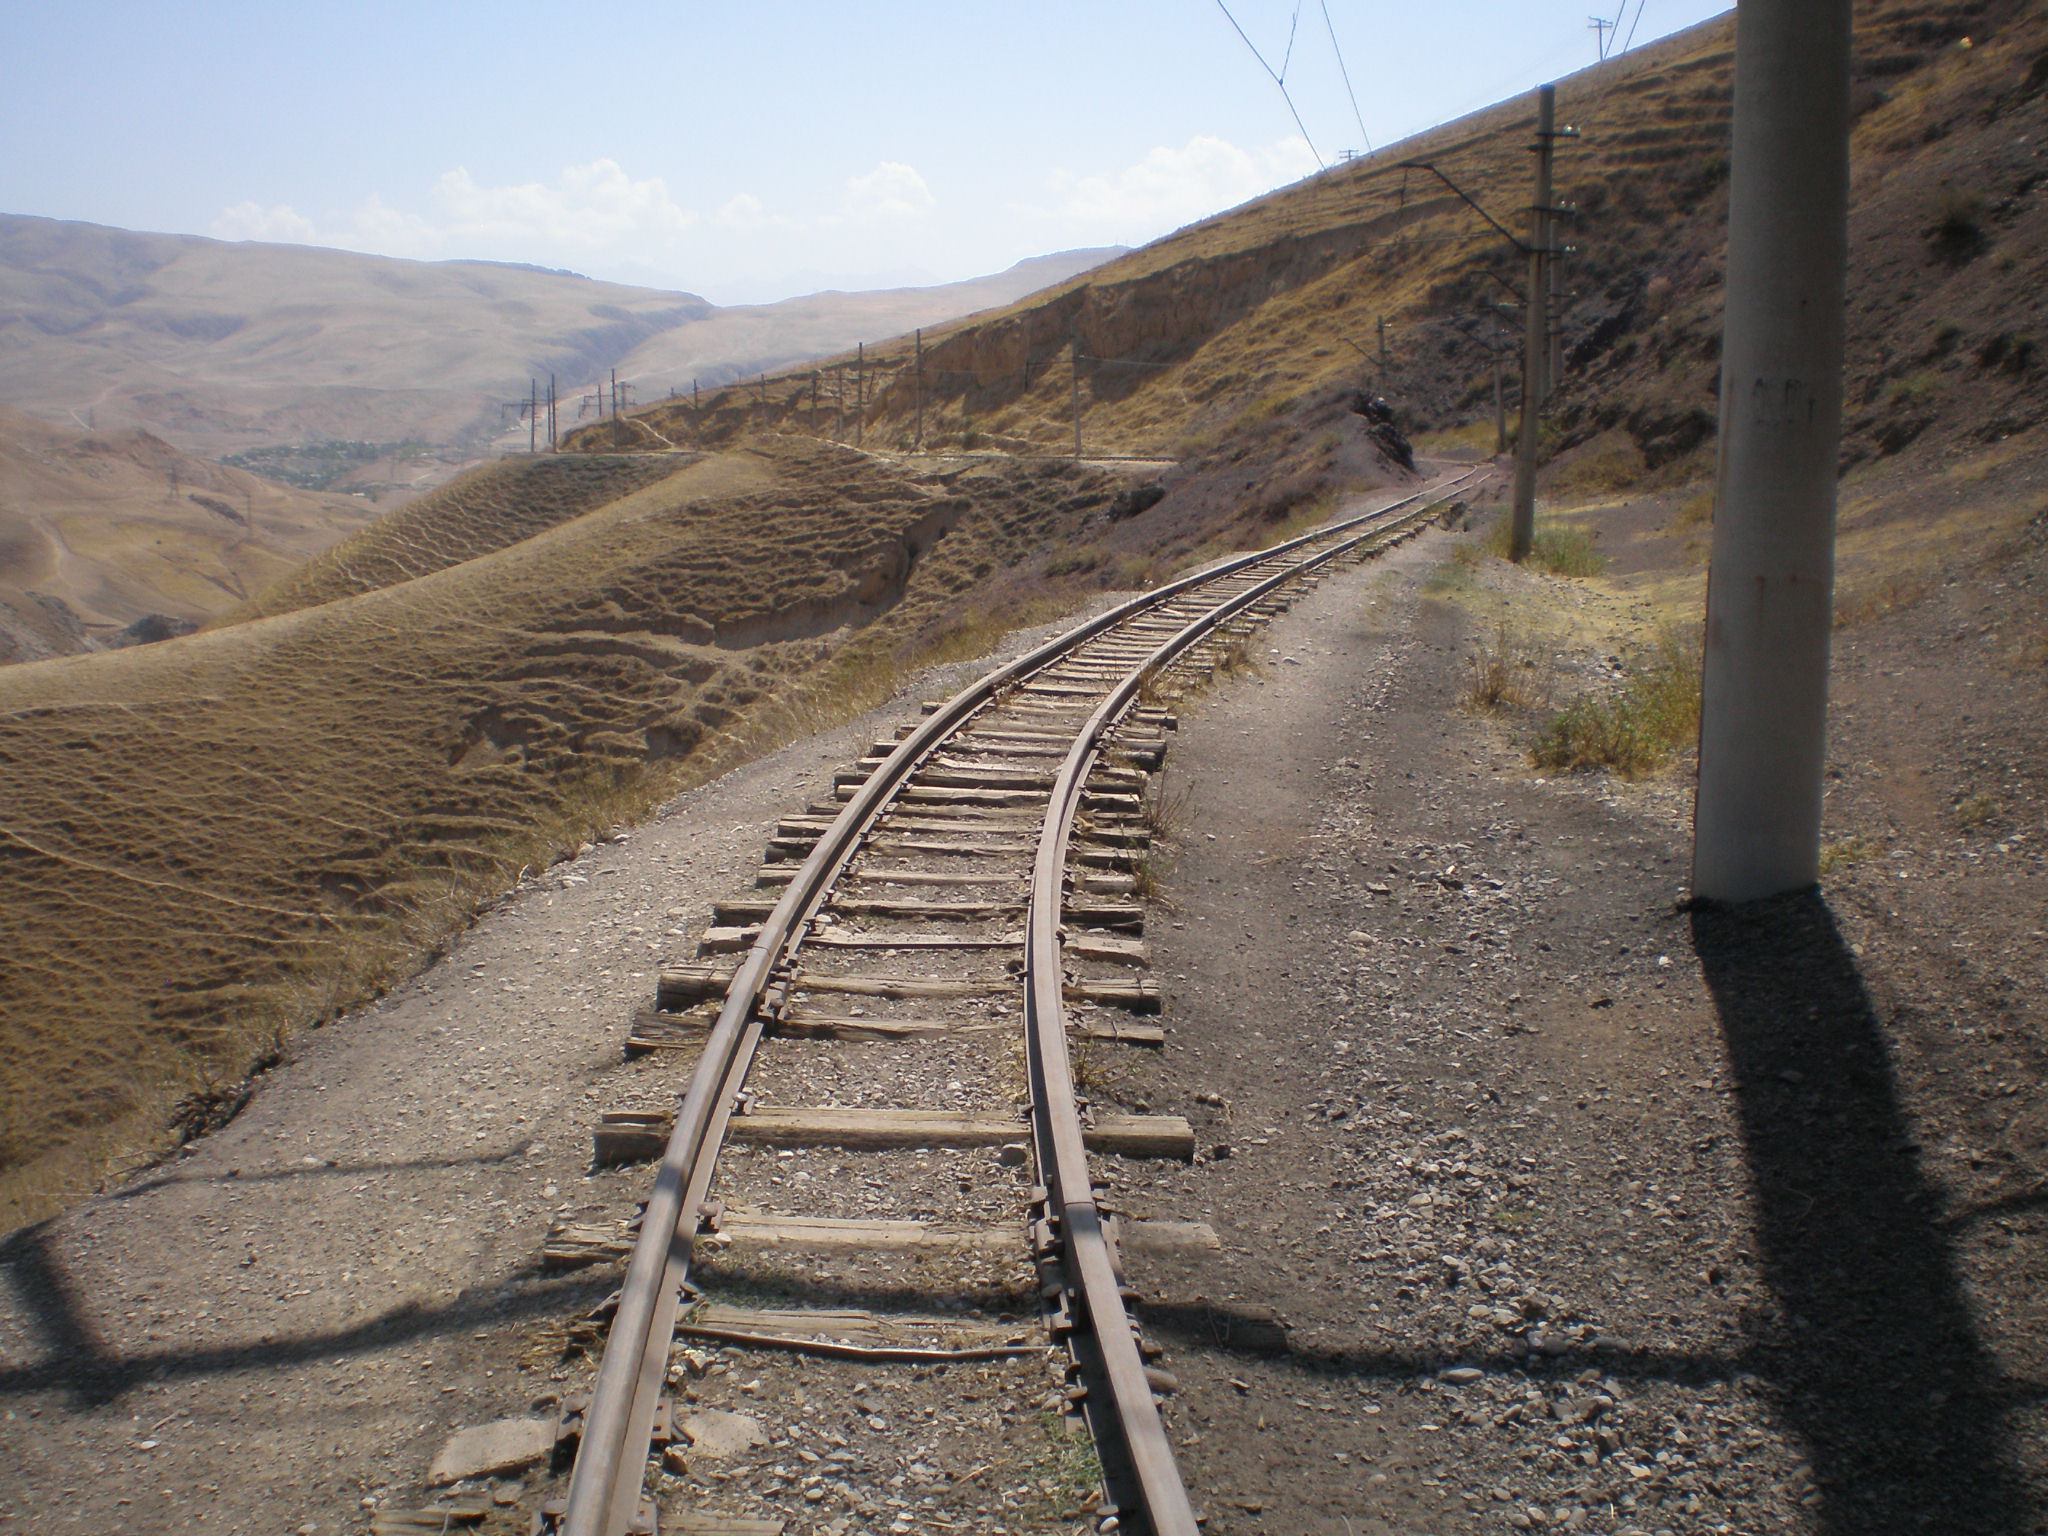 Сулюктинская узкоколейная железная дорога  —  фотографии, сделанные в 2008 году (часть 51)